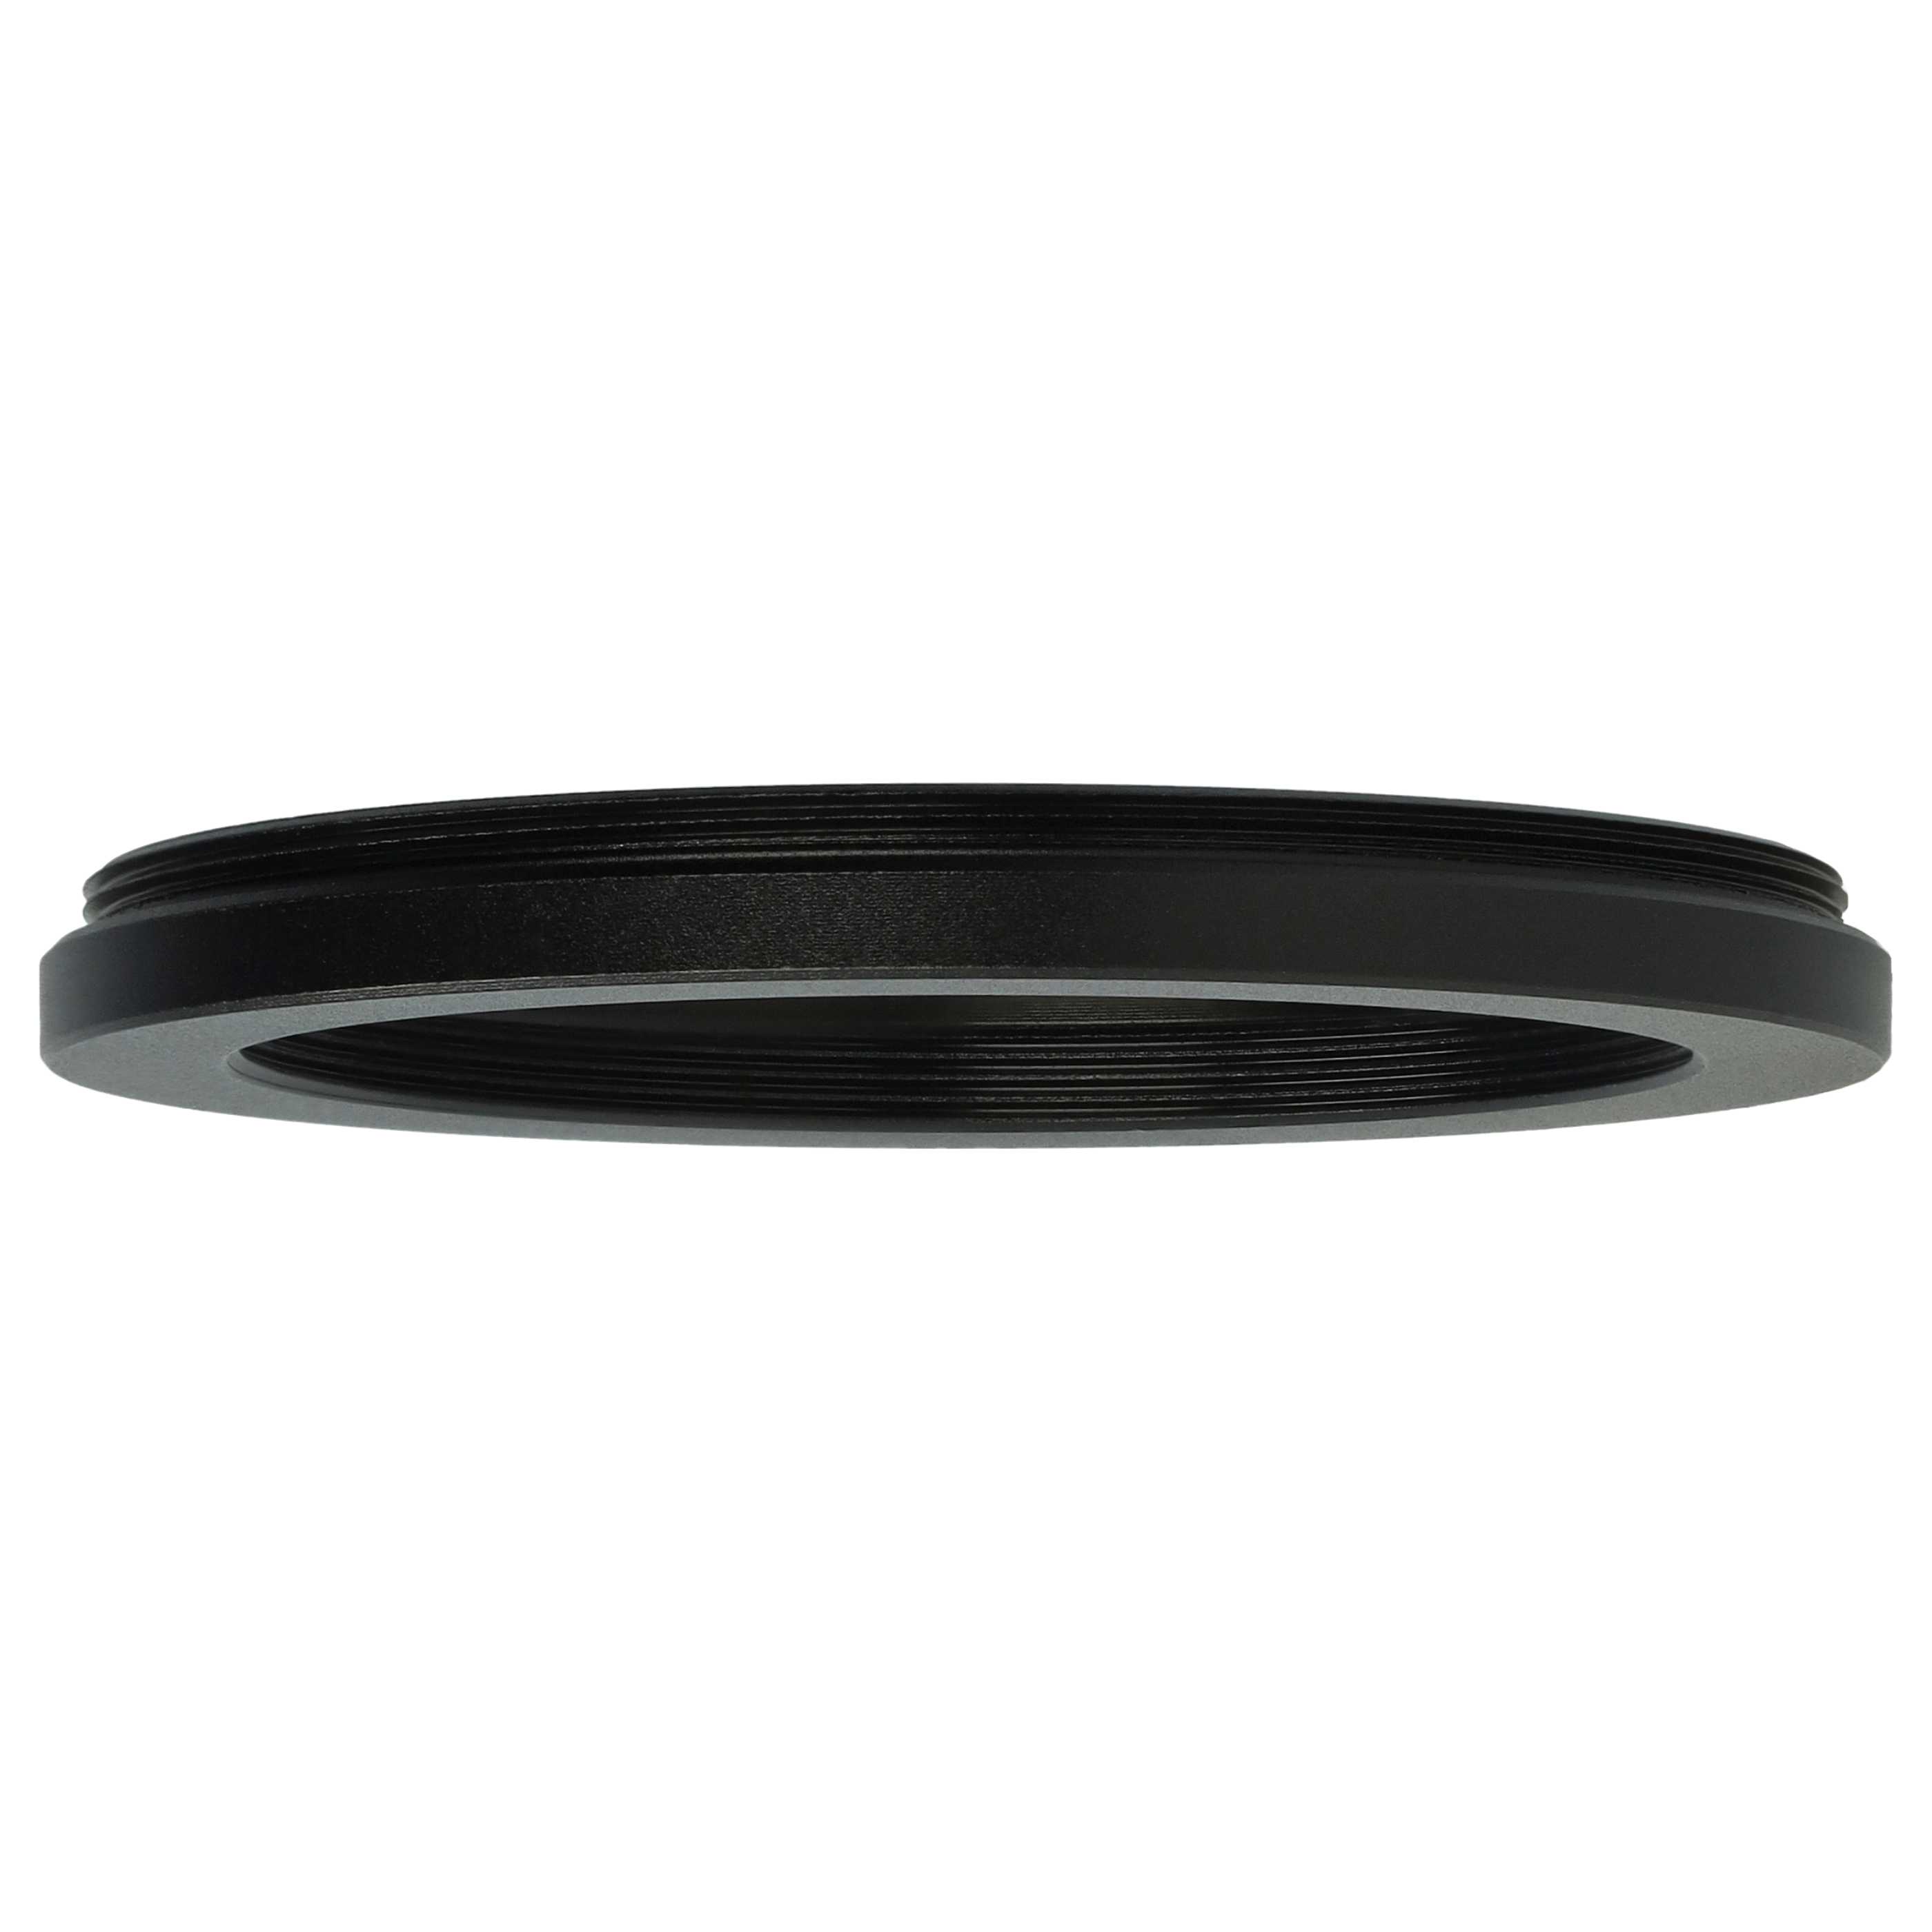 Redukcja filtrowa adapter Step-Down 58 mm - 48 mm pasująca do obiektywu - metal, czarny